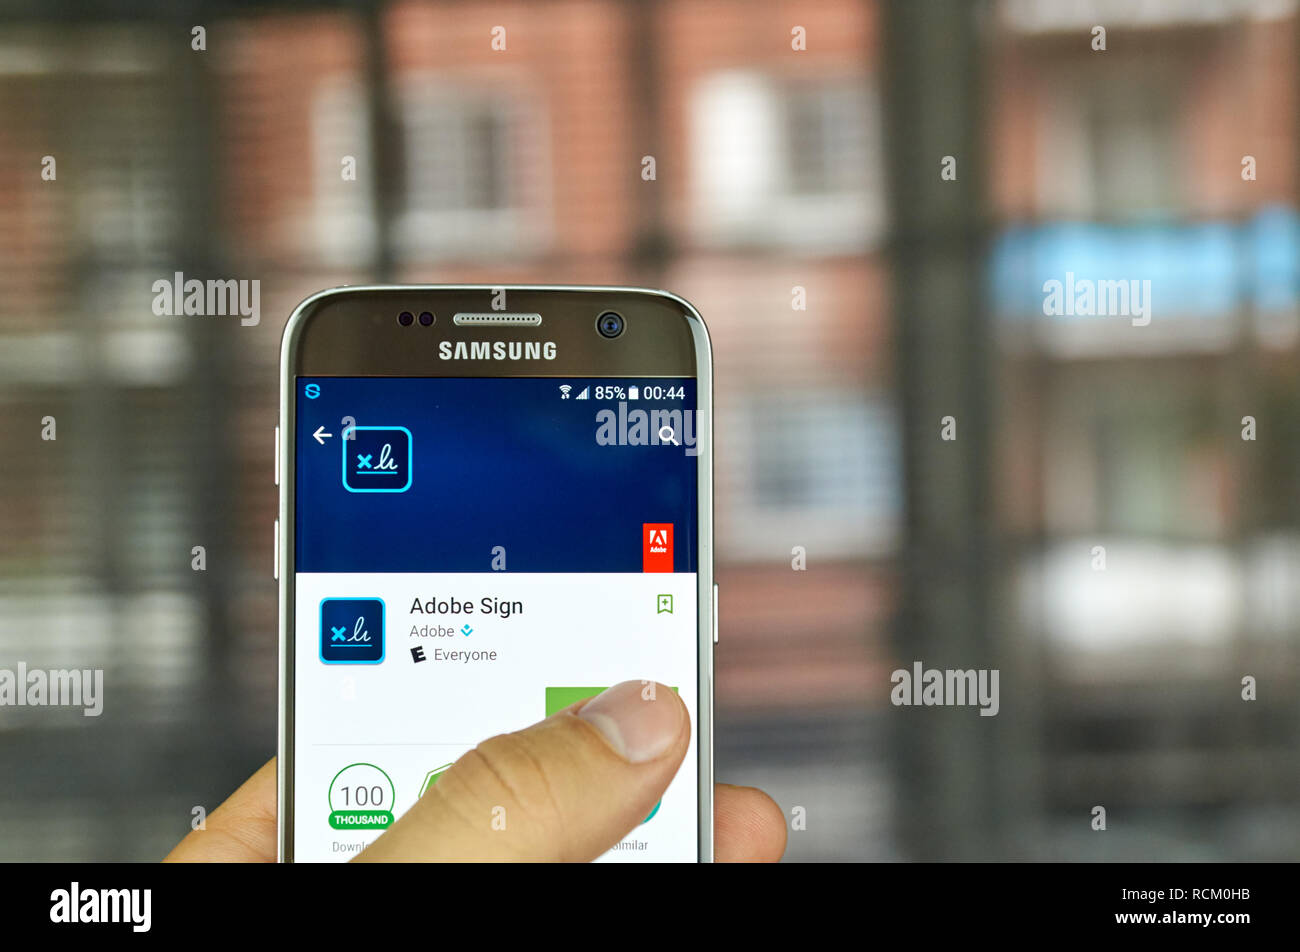 MONTREAL, KANADA - Juli 15: Adobe Anwendung auf Samsung S7-Bildschirm. Adobe Sign ist ein e-Signatur Lösung, die vollständig und nahtlos integriert. Stockfoto